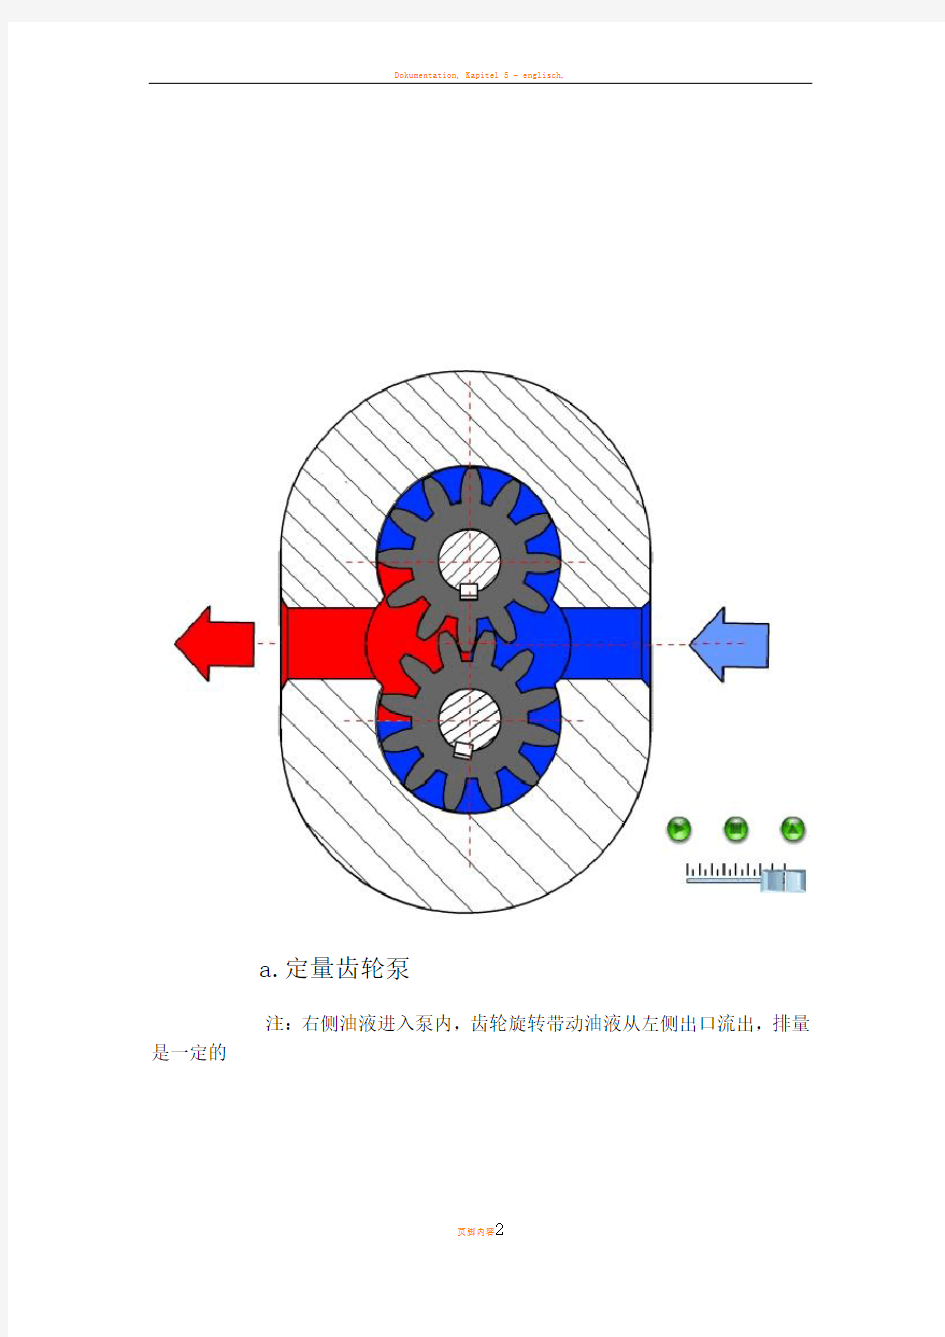 海瑞克盾构机液压系统说明(附电路图)